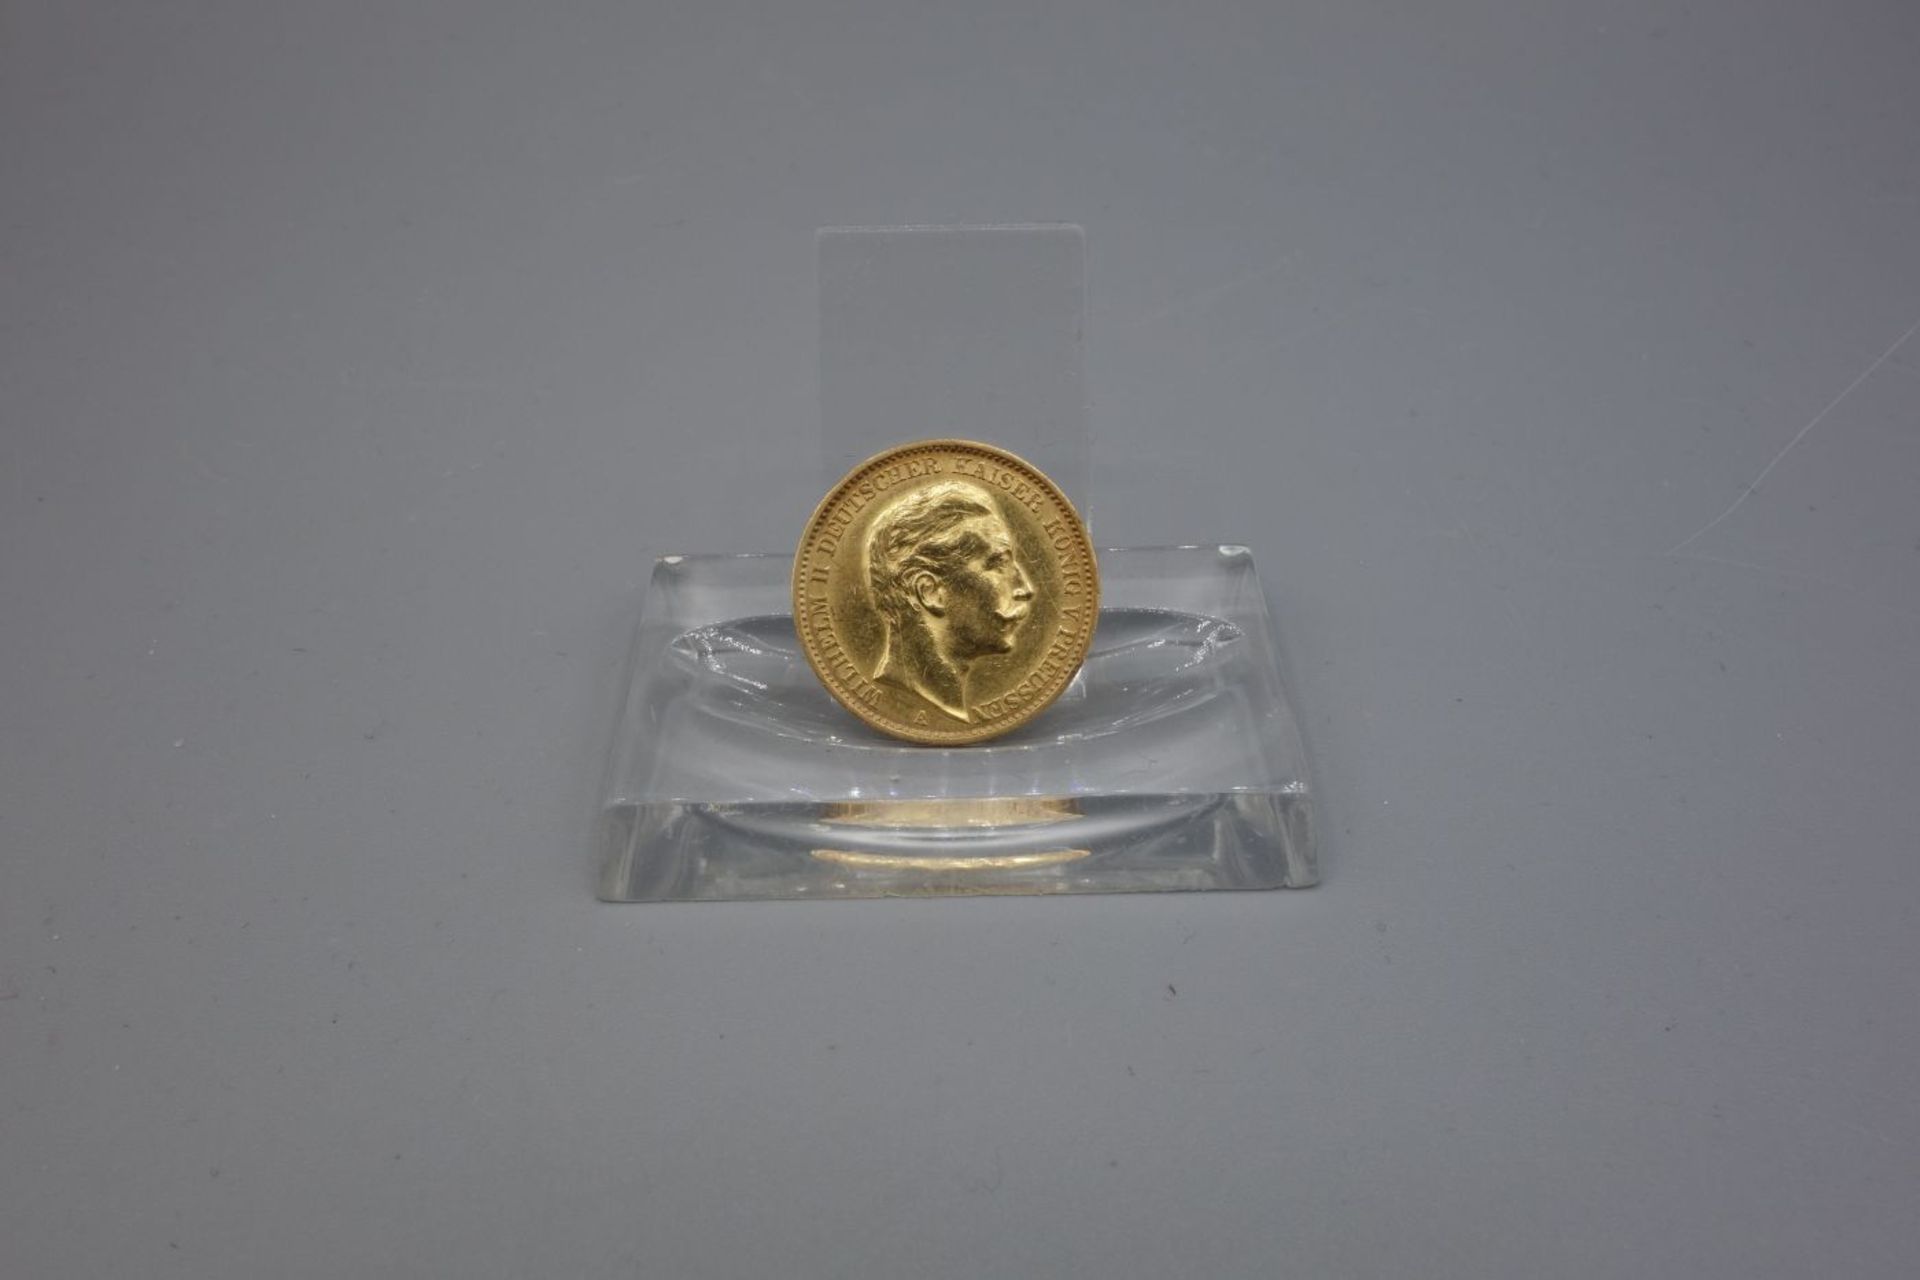 REICHSGOLDMÜNZE KAISER WILHELMS II. / coin, 7,5 g. Umlaufgoldmünze des deutschen Kaiserreichs.